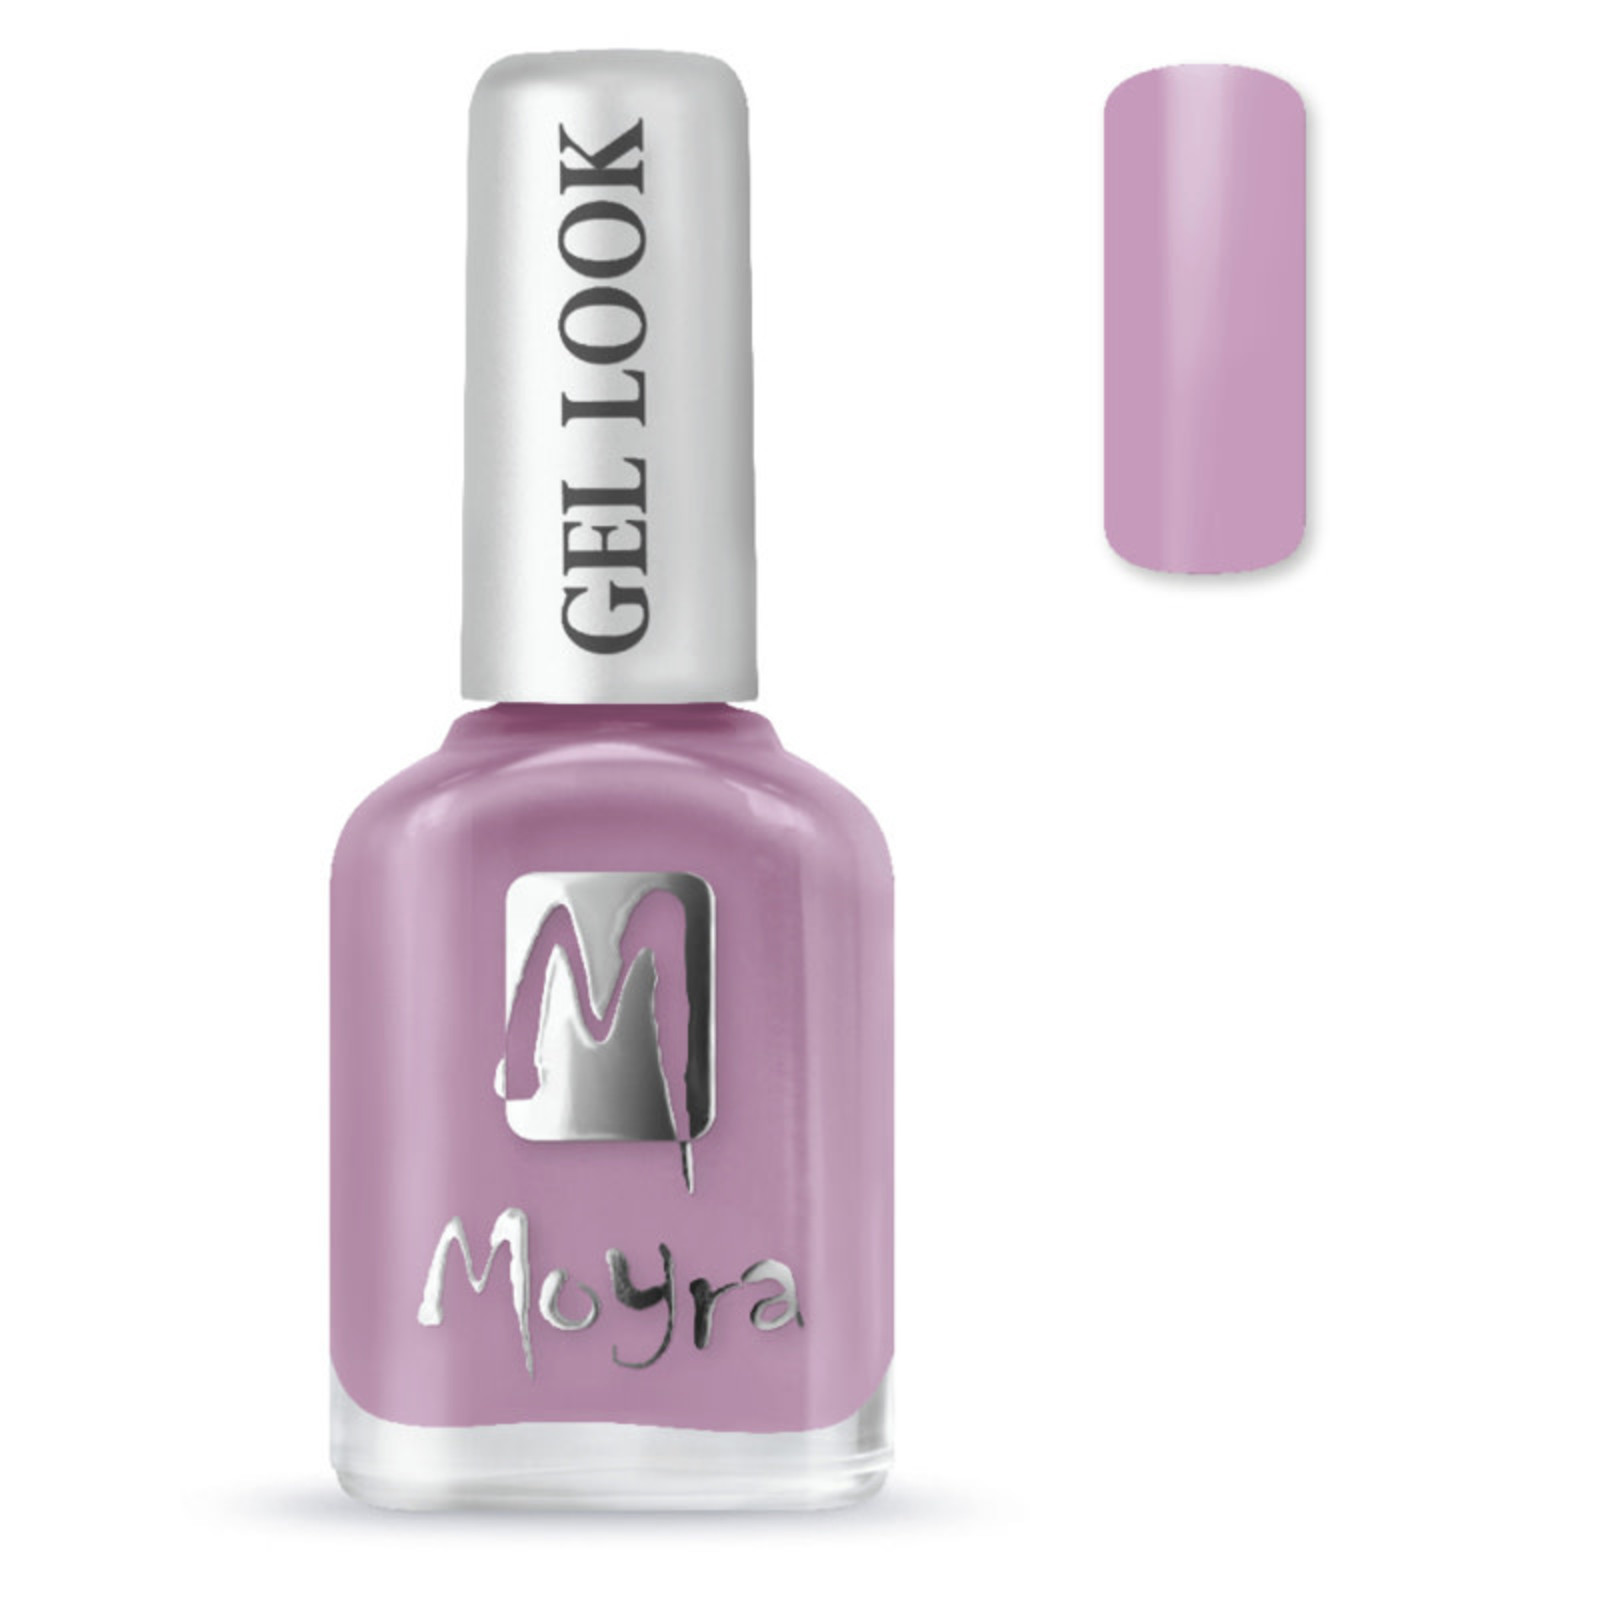 Moyra Moyra nail polish gel look 975